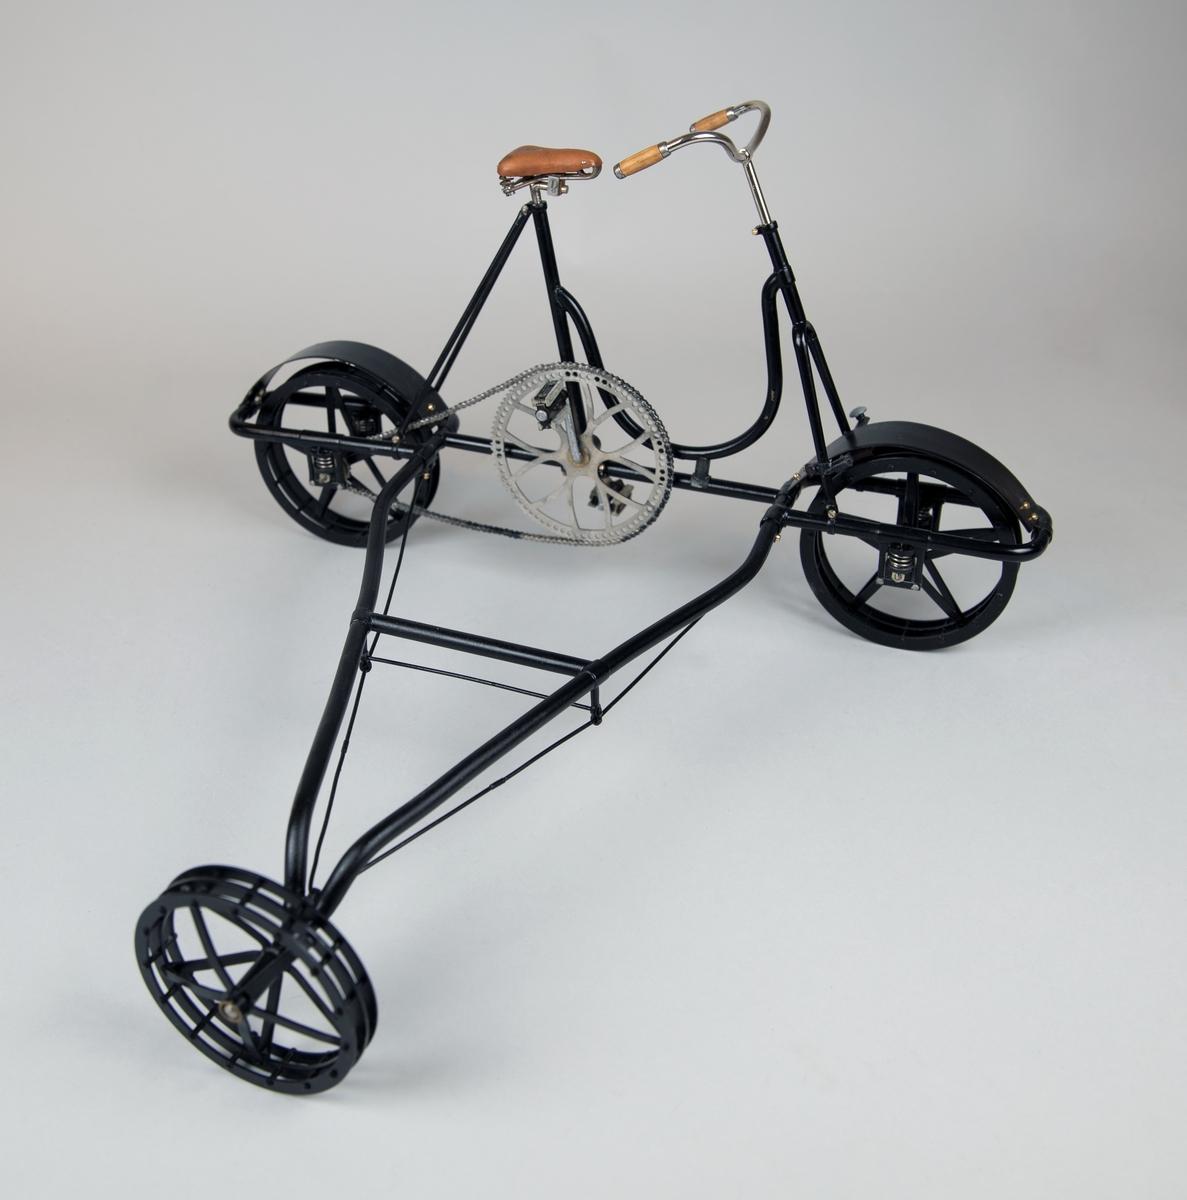 Modell av svart 3-hjulig cykeldressin, skala 1:5, av mässing och stål. Handtag i trä. Kedjan gjord av individuella länkar. Fjädring och broms fungerar. Ljusbrun sadel av formpressat läder.